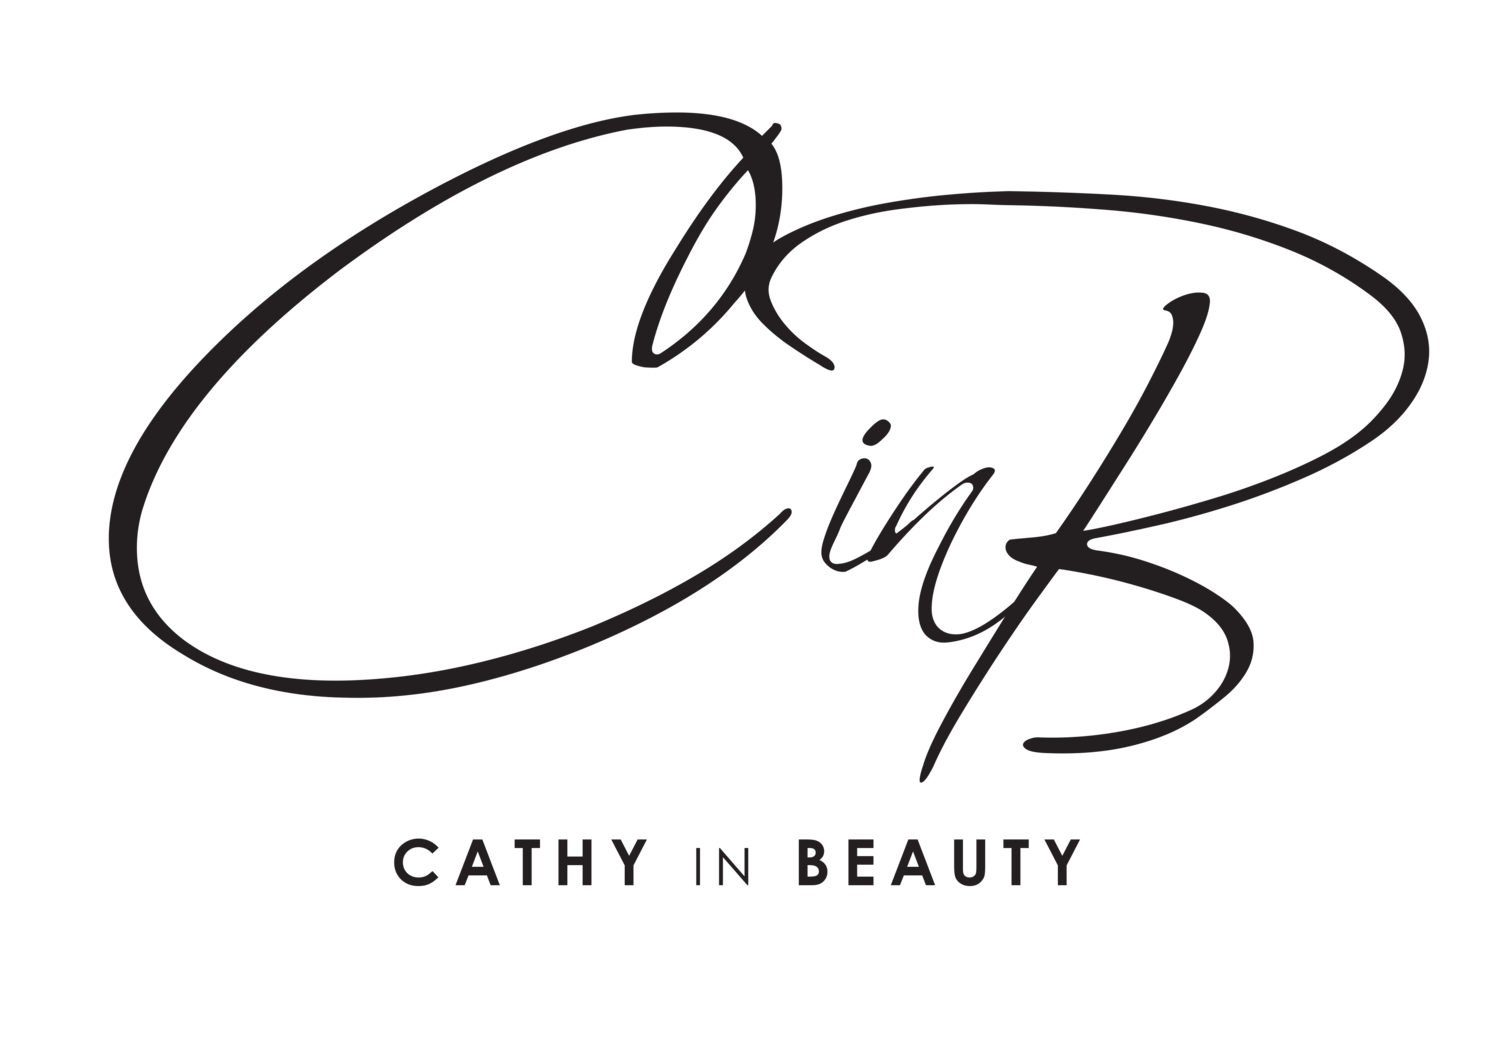 Cathy In Beauty